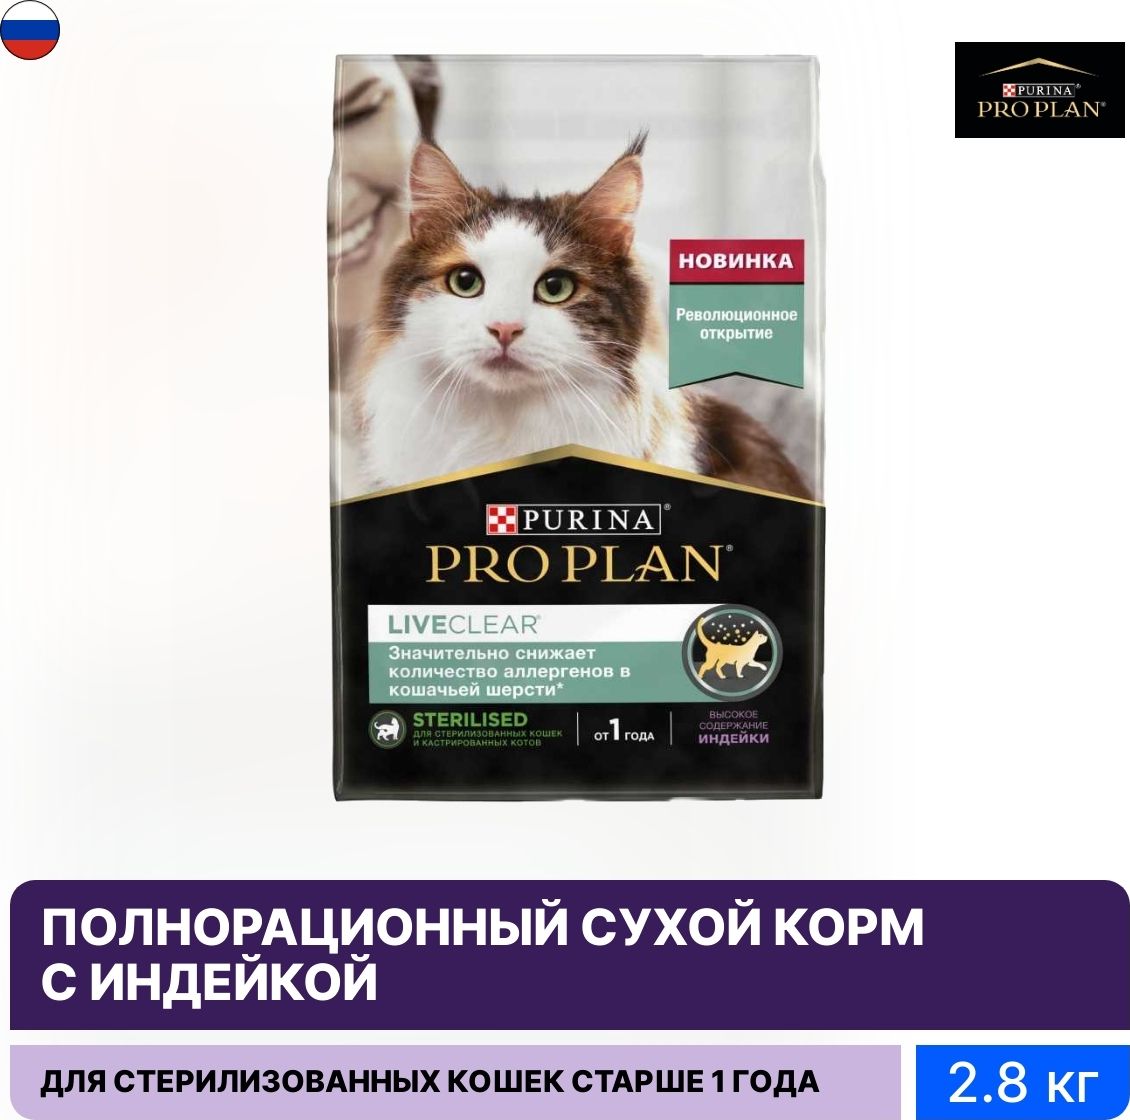 Корм для кошек Pro Plan liveclear. Core для стерилизованных кошек. Purina Pro Plan реклама. Корм Проплан liveclear д/стерил Кош с индейкой 1,4кг. Pro plan liveclear стерилизованных